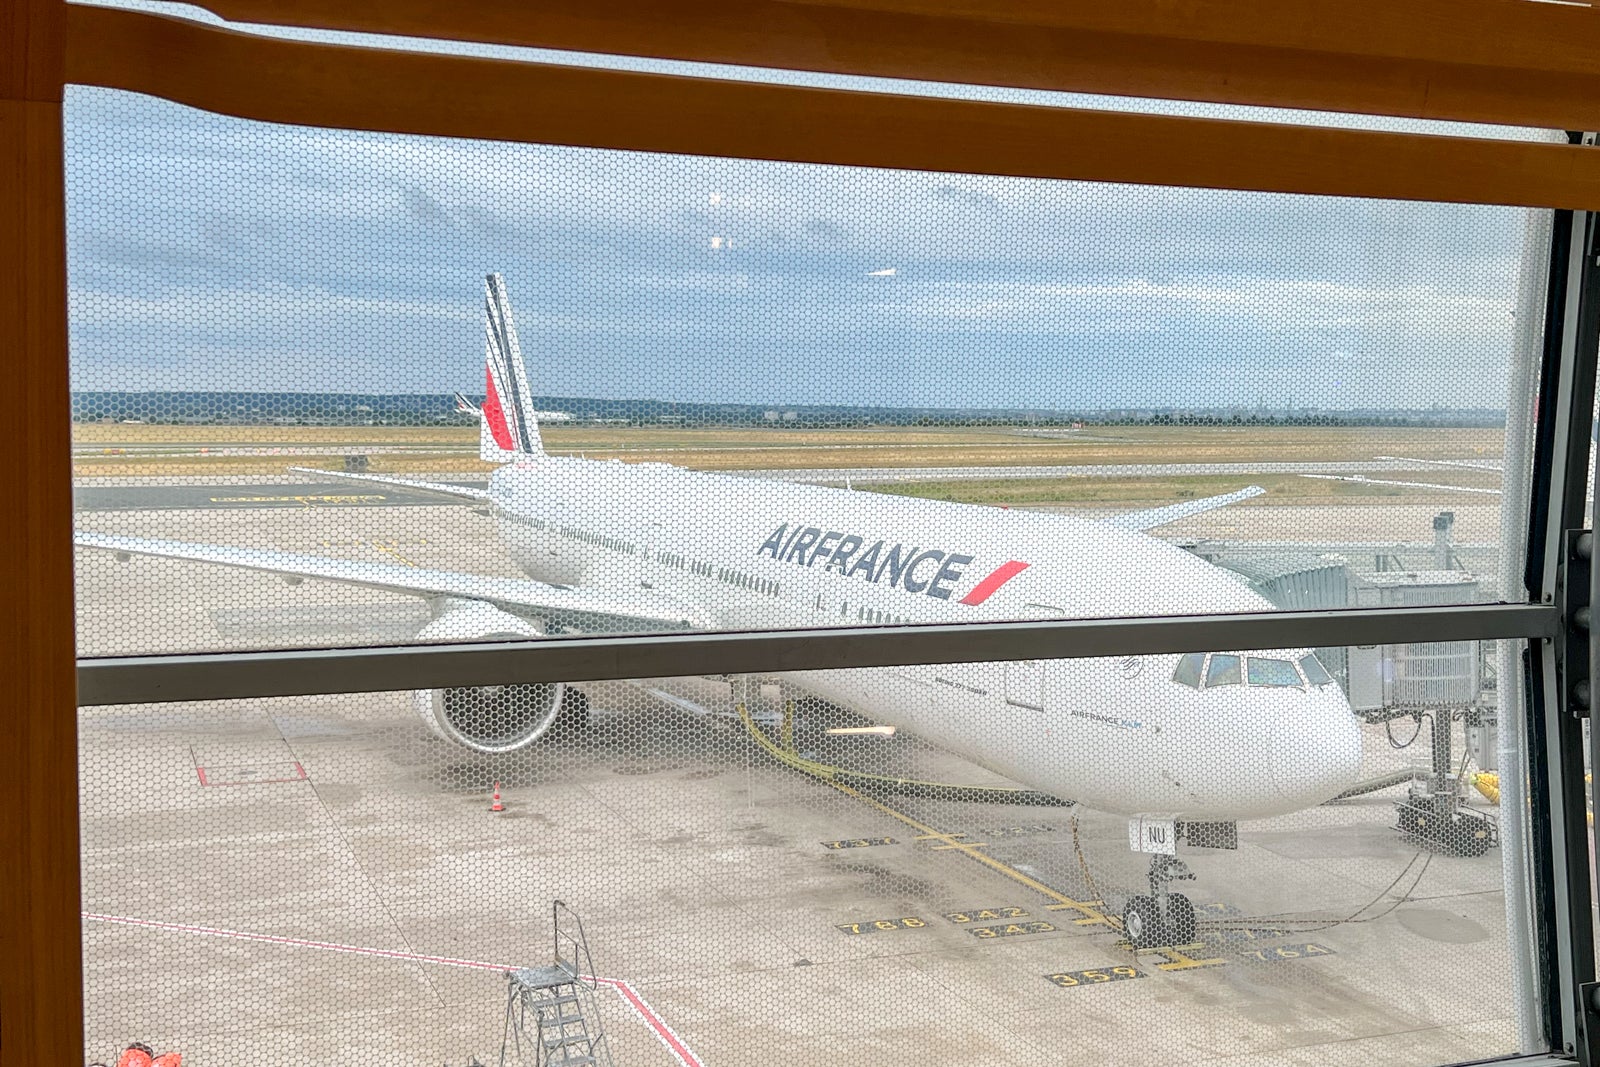 Air France plane through window